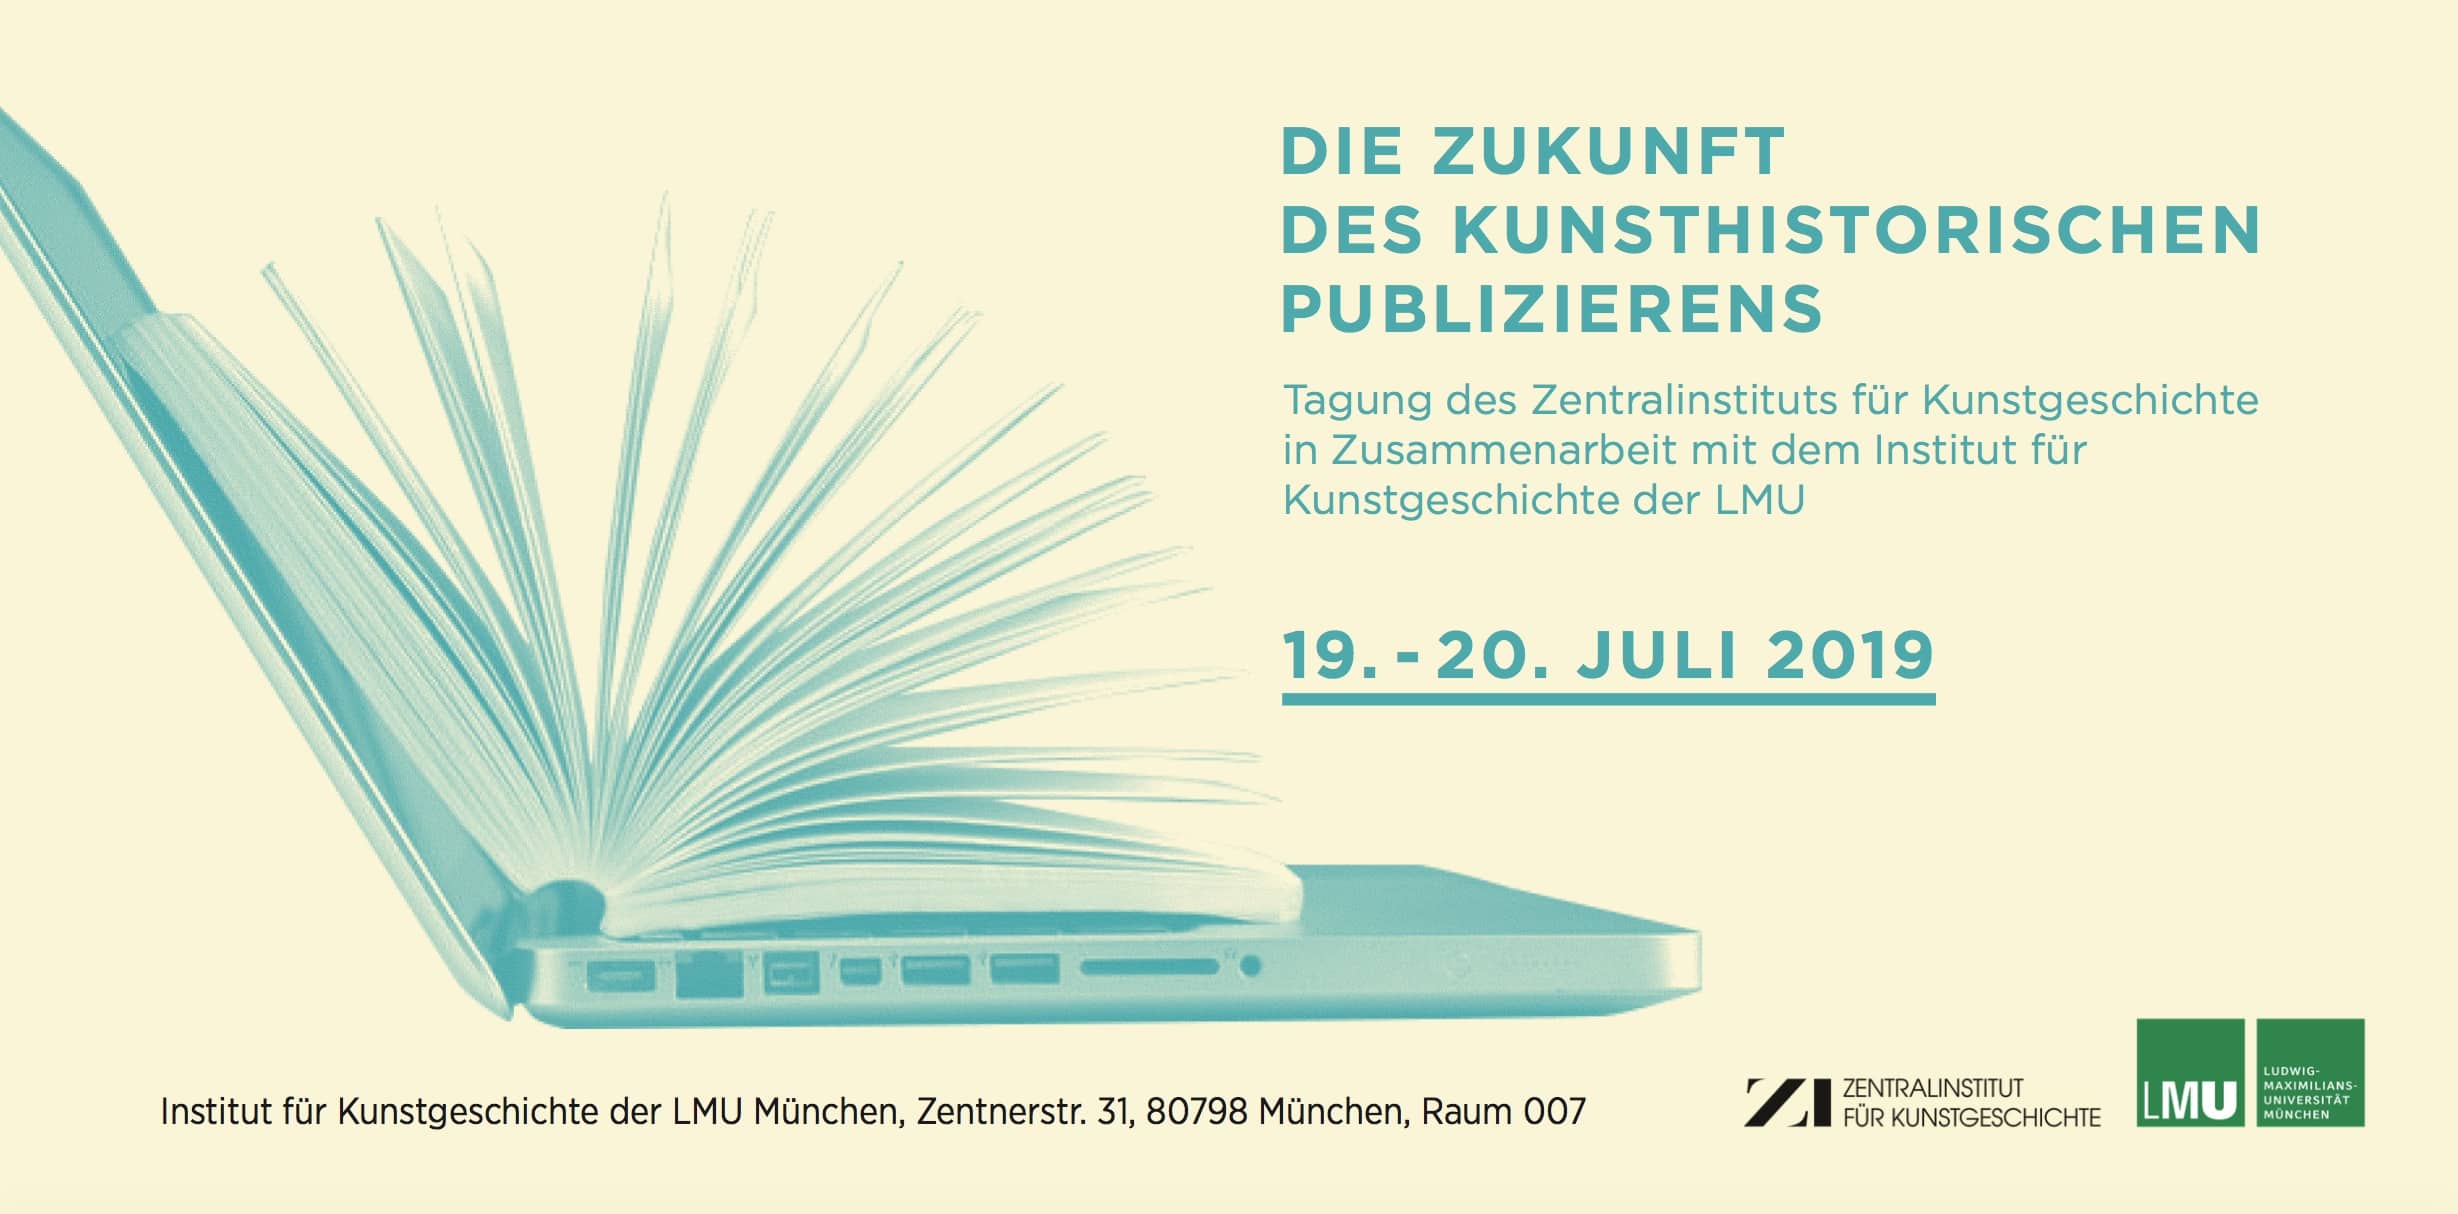 die das Zentralinstitut für Kunstgeschichte in Kooperation mit dem Institut für Kunstgeschichte der LMU München am 19./20.Juli fokussiert: Die Zukunft des kunsthistorischen Publizierens